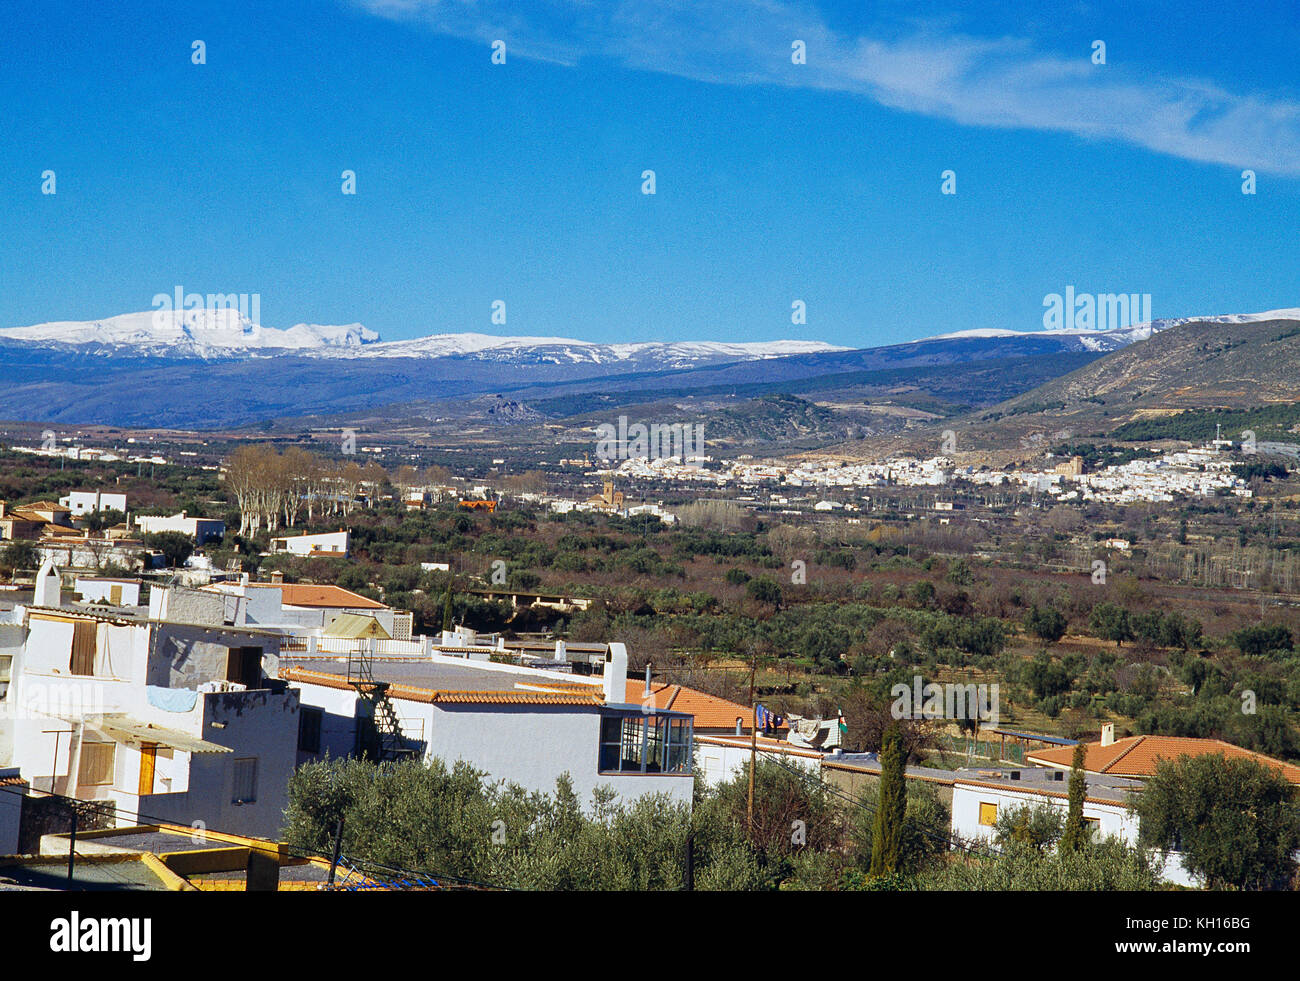 Laujar de Andarax viewed from Fuente Victoria. Las Alpujarras, Almeria province, Andalucia, Spain. Stock Photo